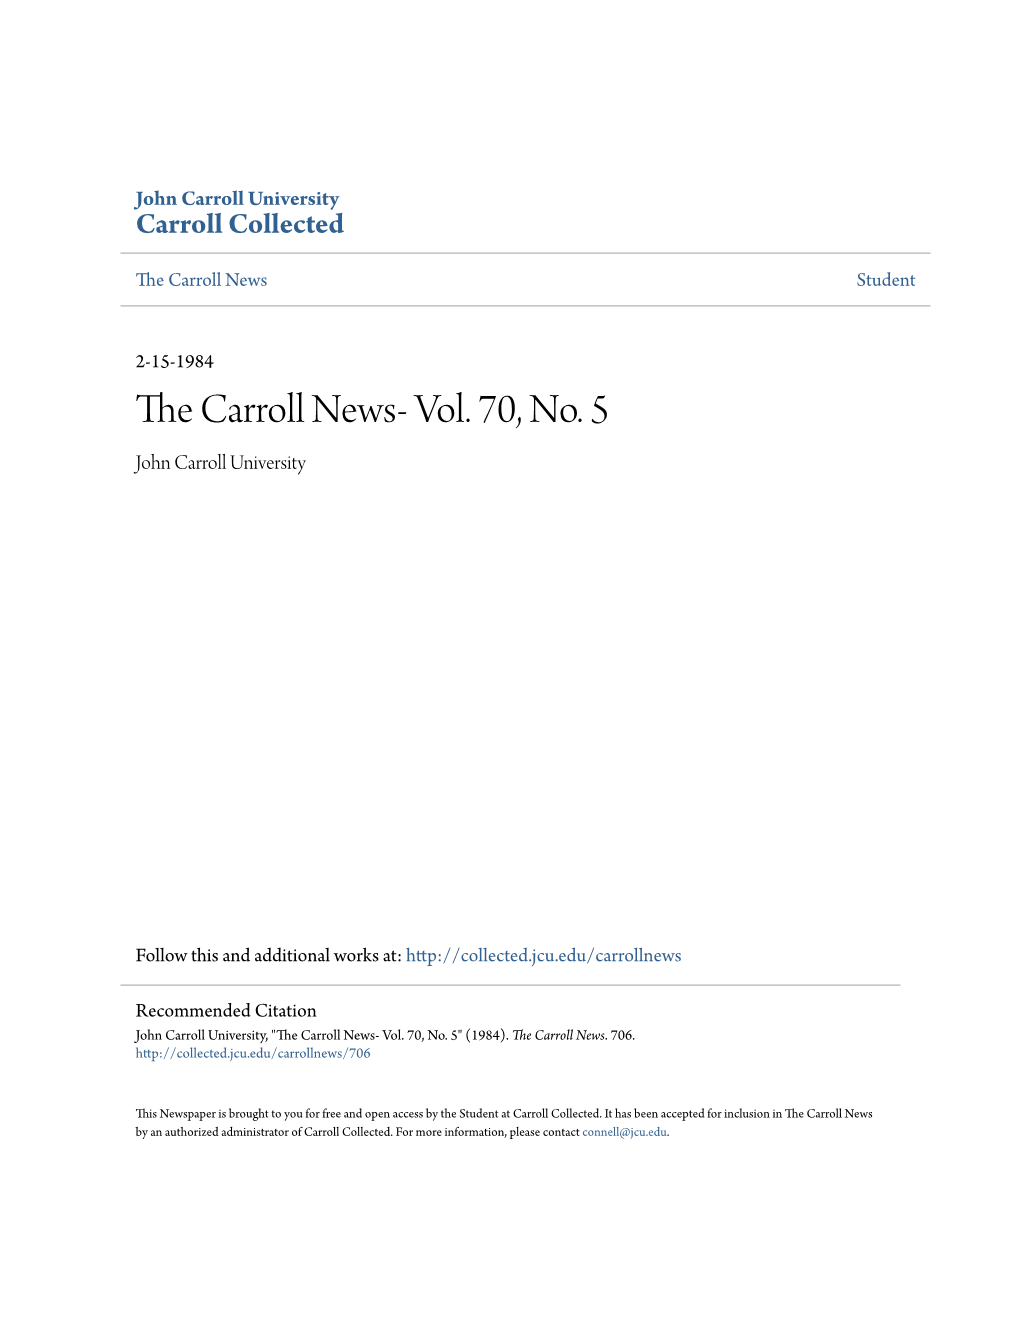 The Carroll News- Vol. 70, No. 5